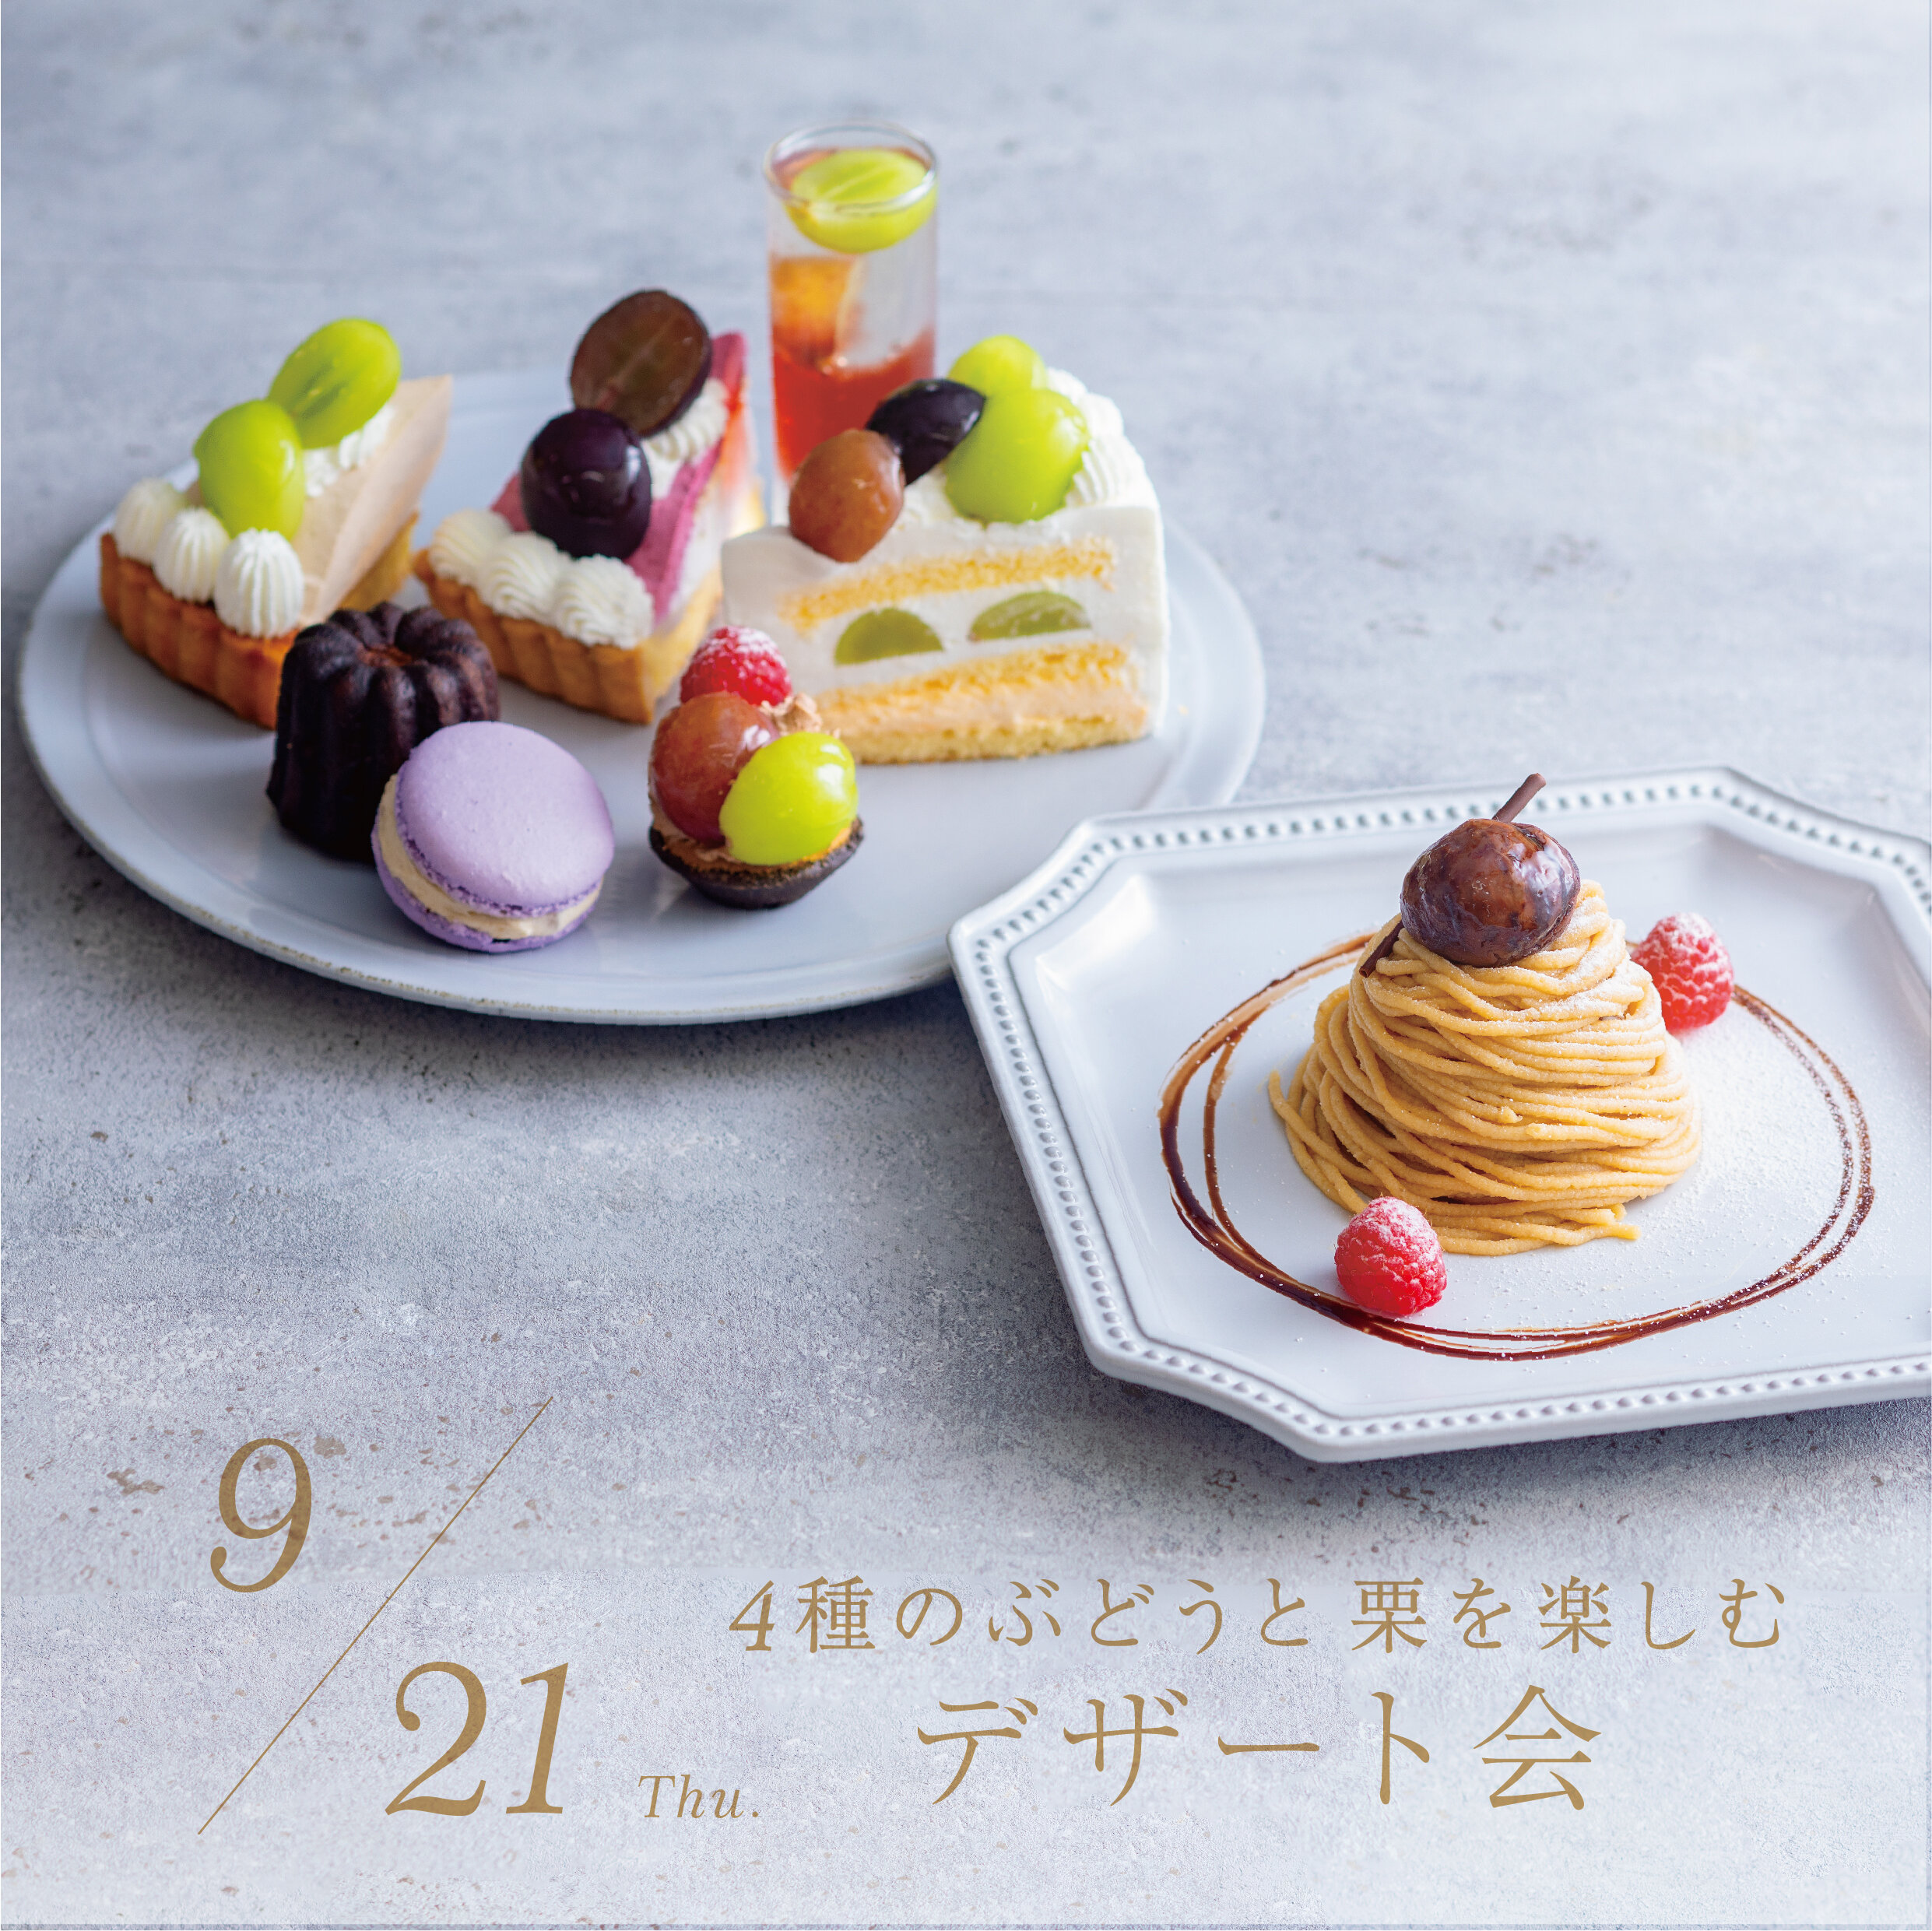 LMH-ちらし-ぶどうと焼き菓子の会-230921-02.jpg